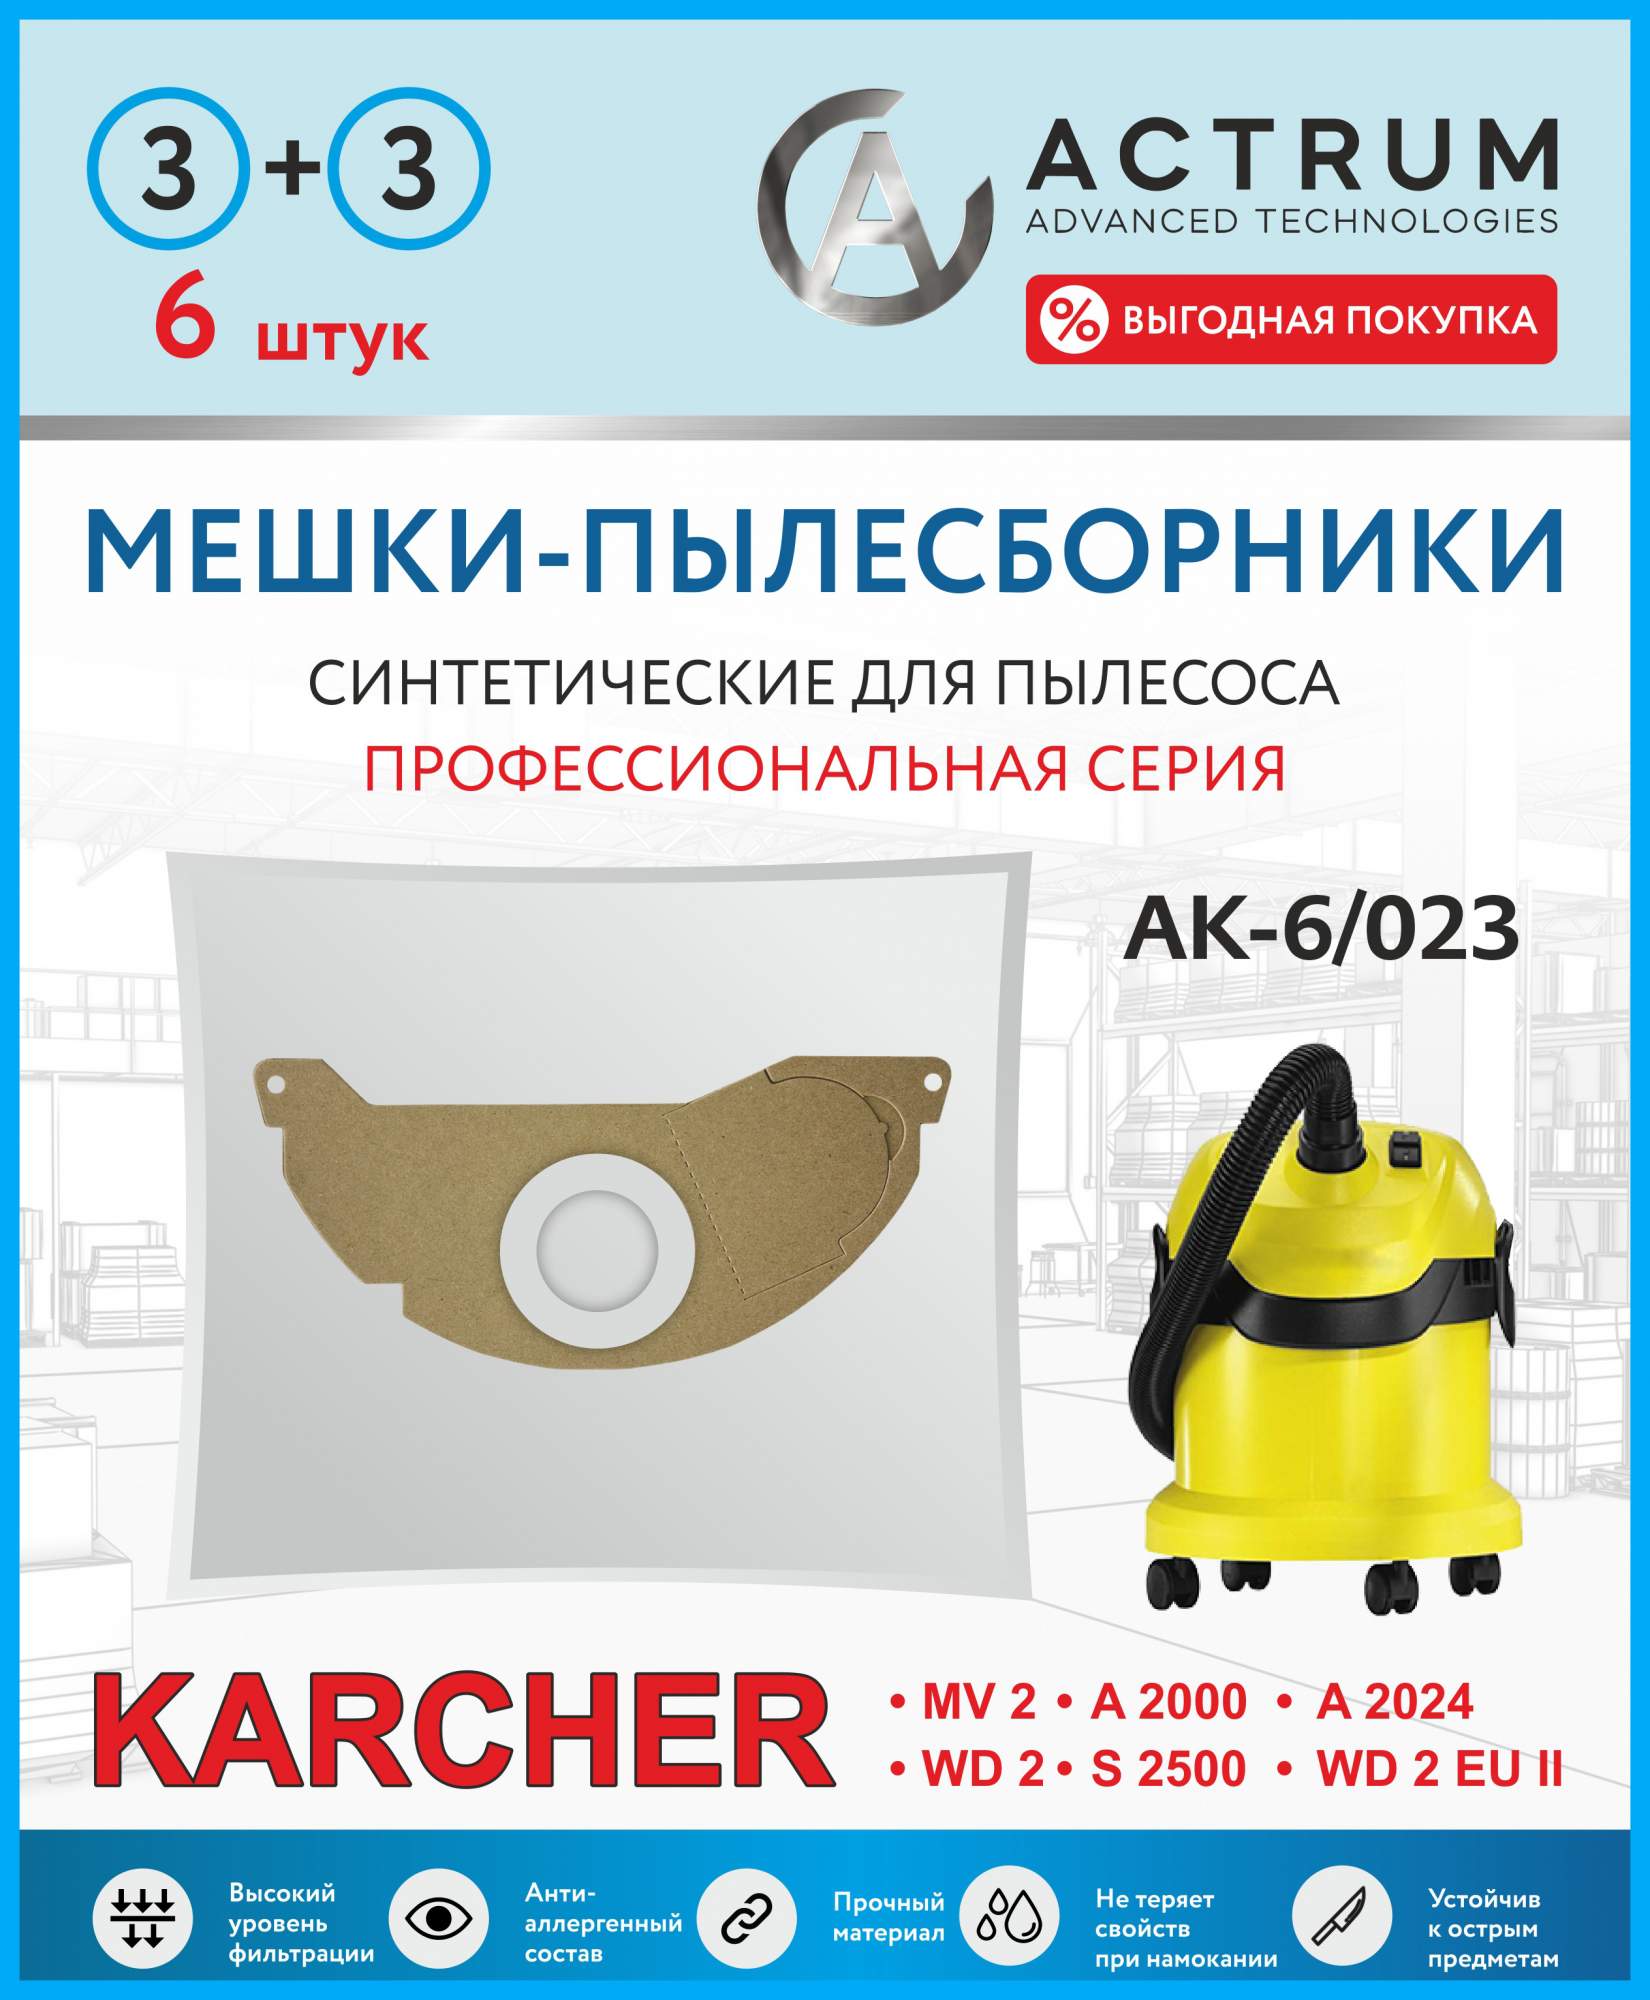 Пылесборник ACTRUM AK-6/023, купить в Москве, цены в интернет-магазинах на Мегамаркет